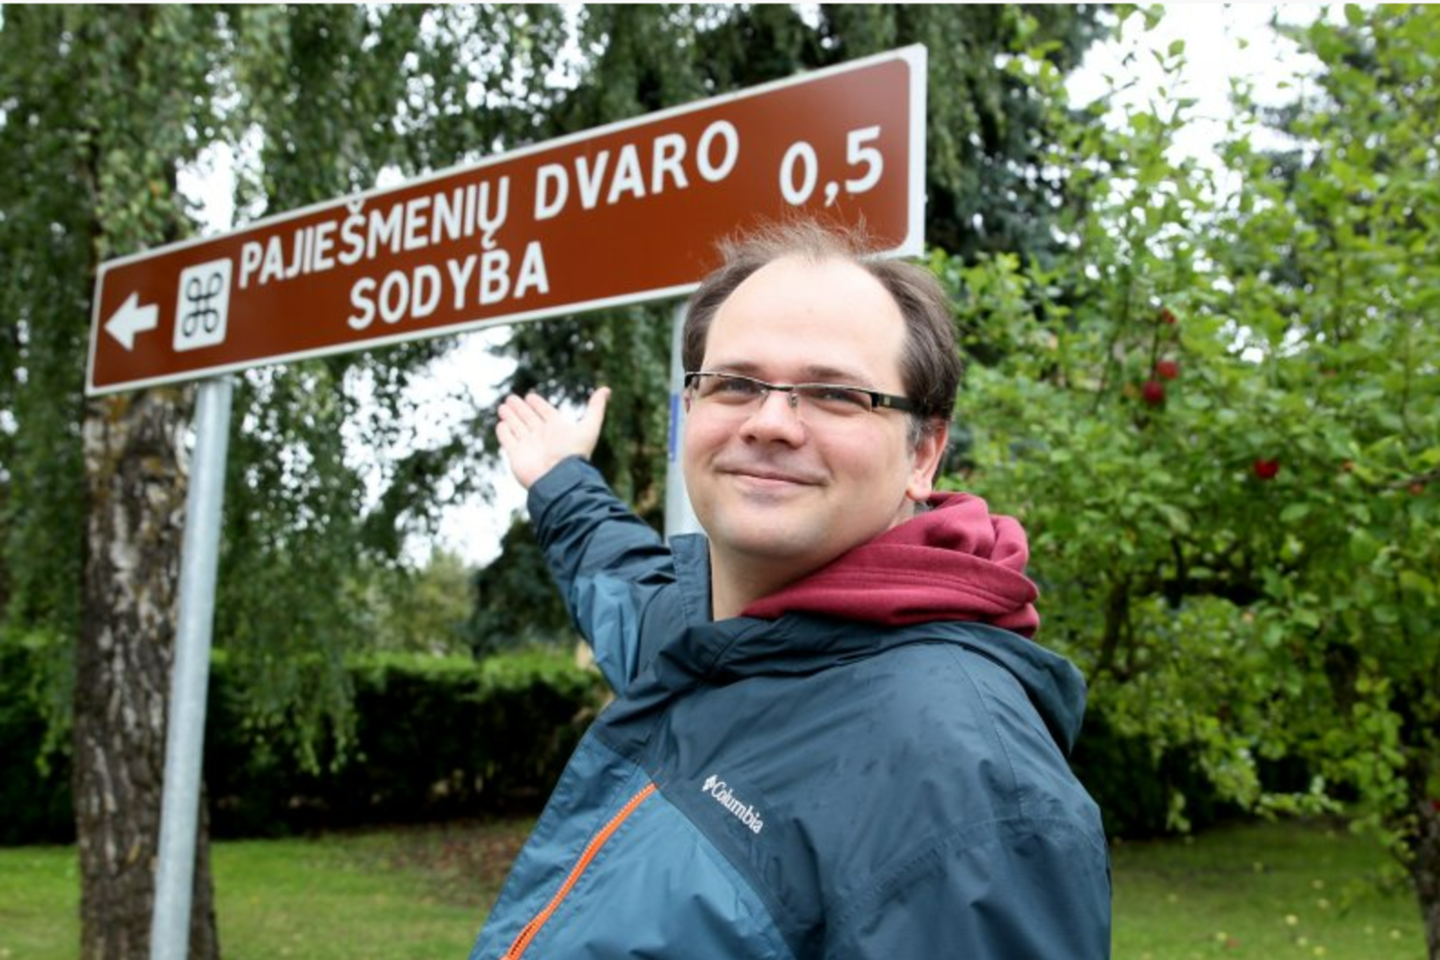 Paskutines atostogų dienas Vilniaus universiteto dėstytojas J.Jankauskas leido pas tėvus Pajiešmenių kaime.<br>A.Švelnos nuotr.